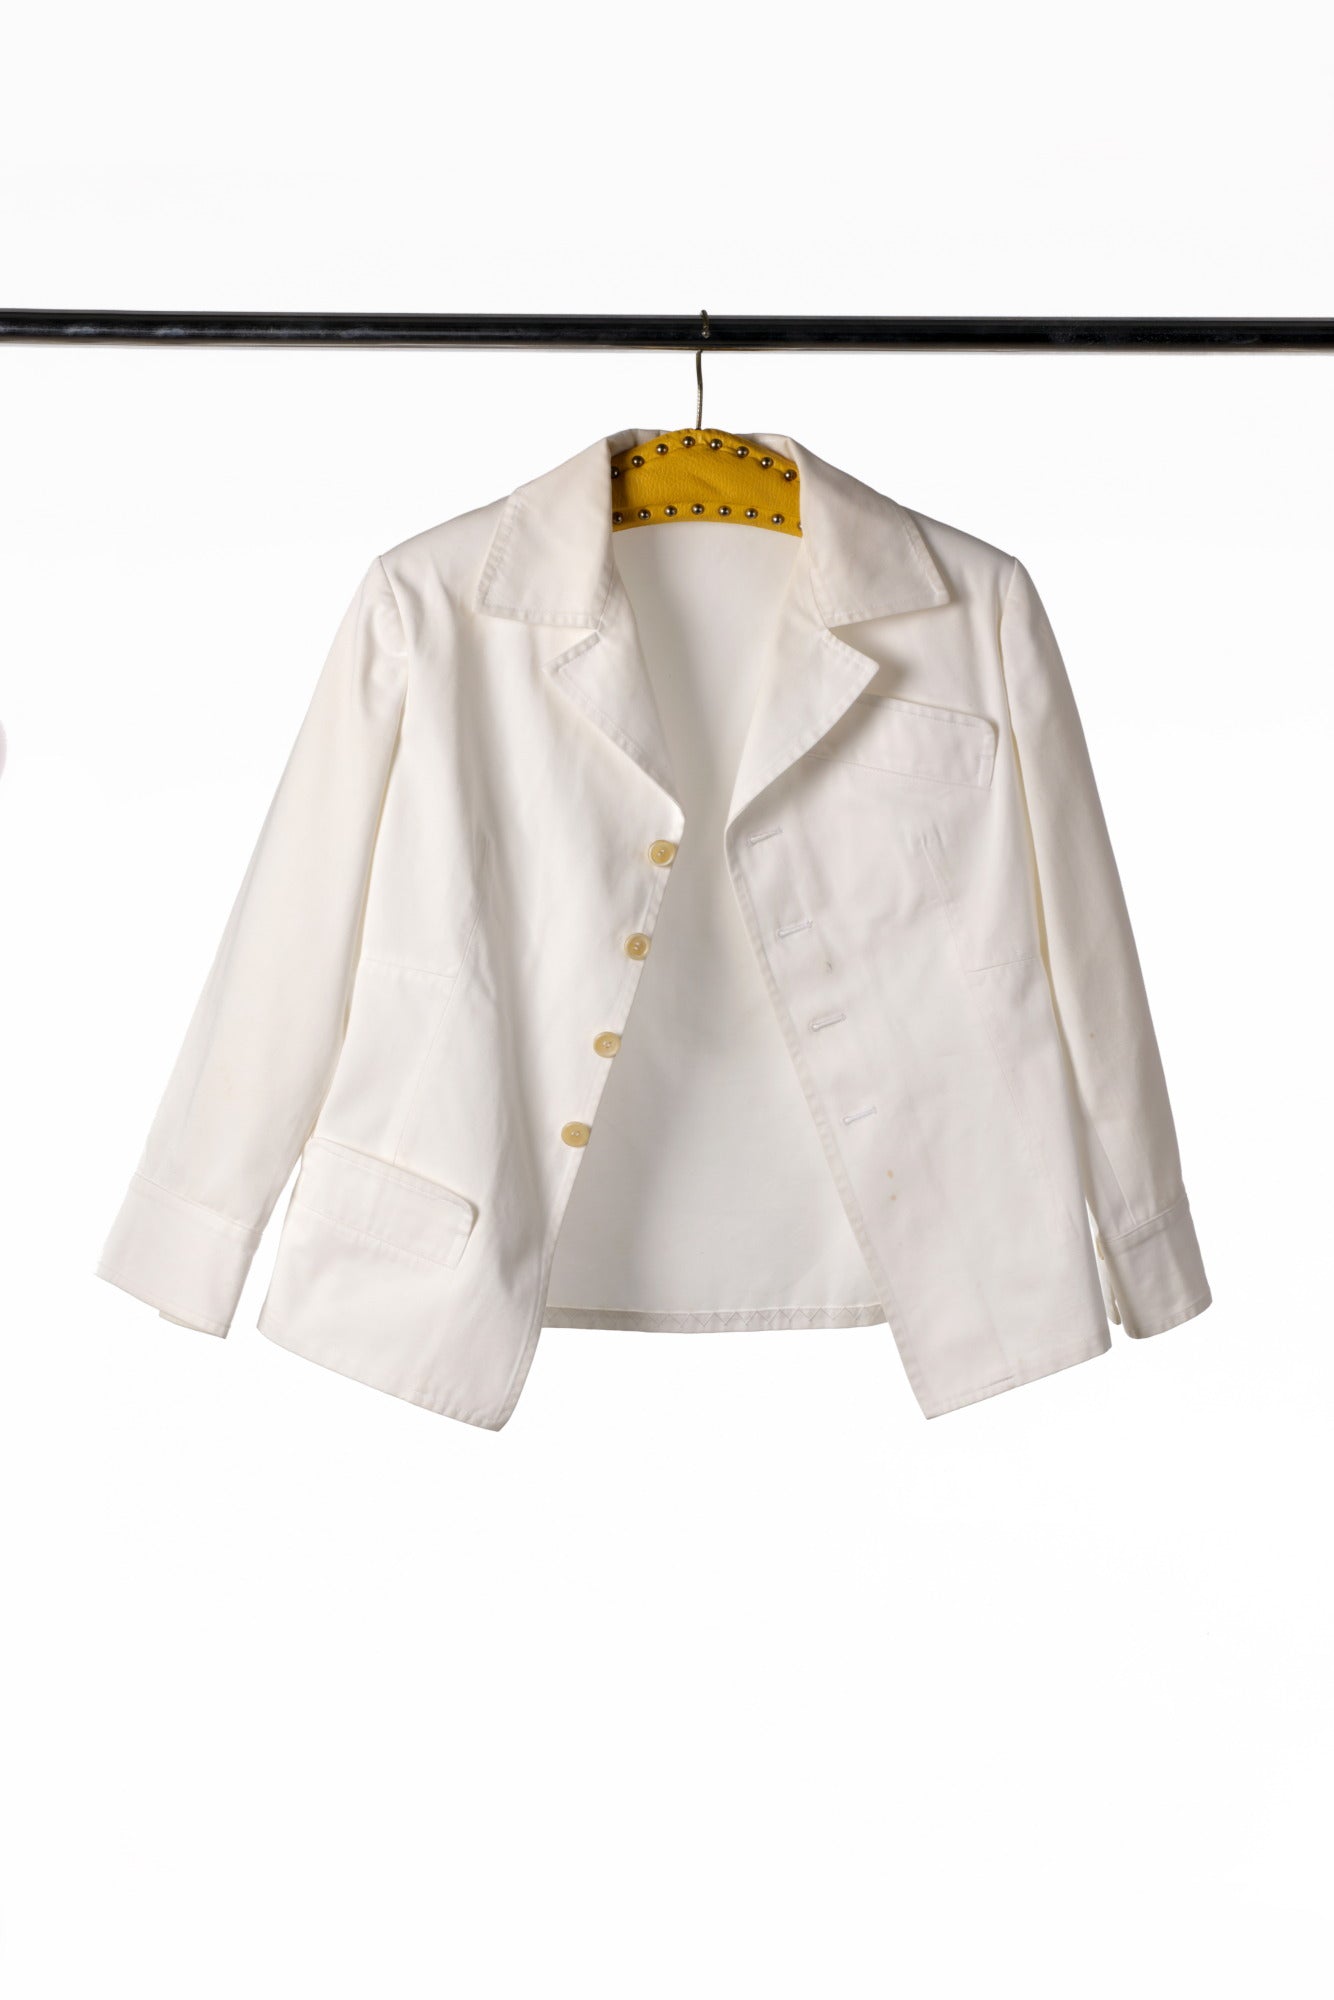 Yohji Yamamoto white cotton jacket